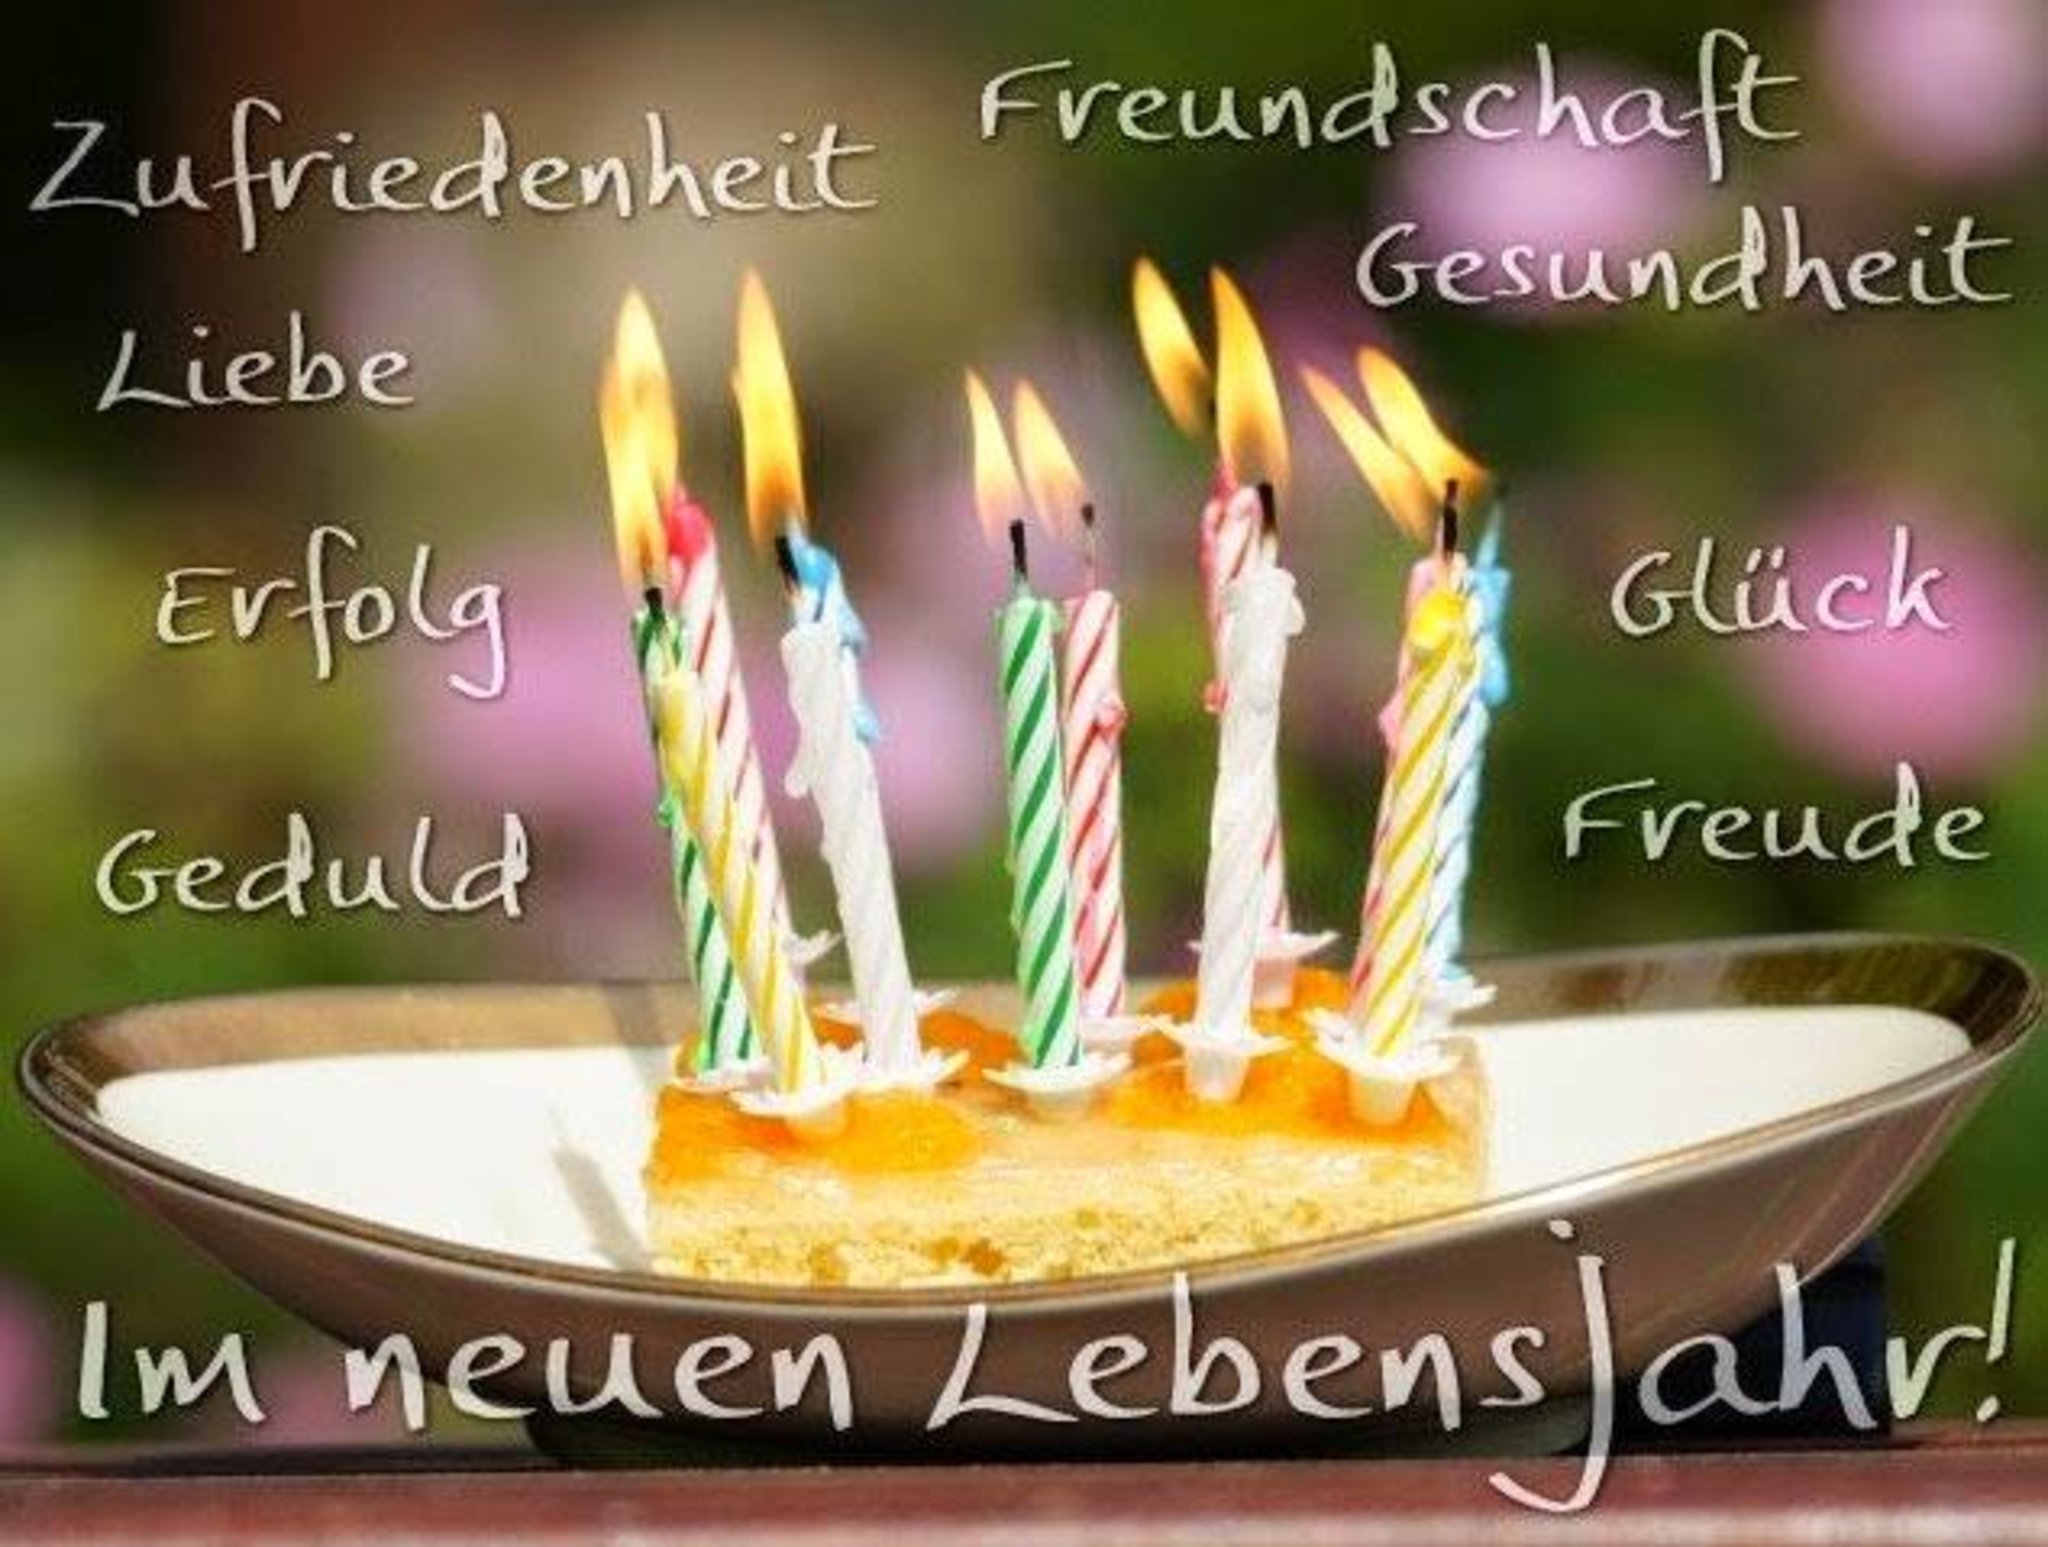 Поздравление мужчине на немецком языке. Поздравление с днем рождения на немецком. Открытка с днём рождения на немецком языке. Поздравление с др на немецком языке. Поздравления с днём рождения мужчине на немецком языке.